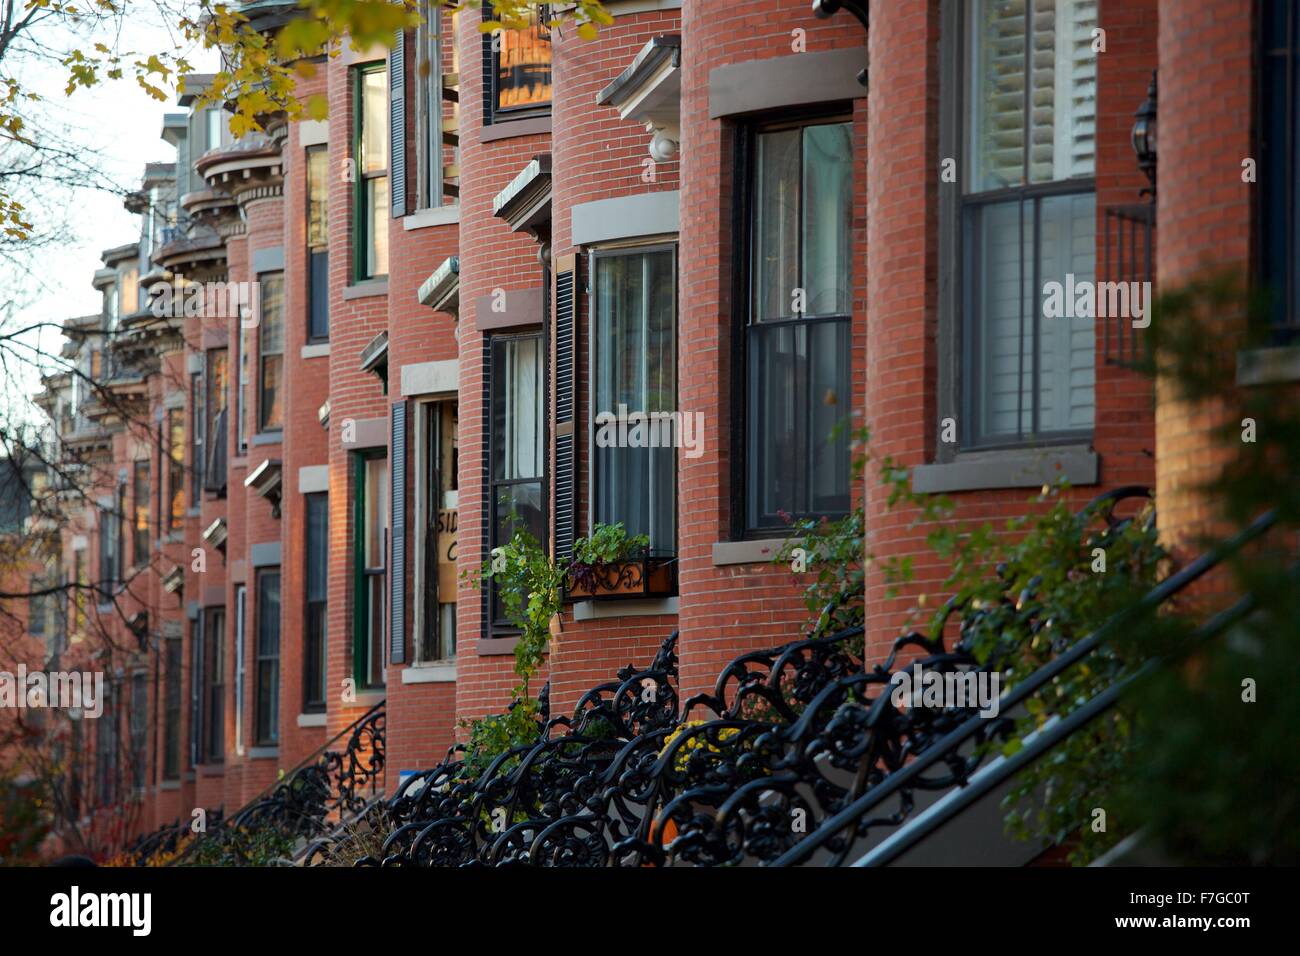 Autumn in the South End neighborhood of Boston, Massachusetts Stock Photo